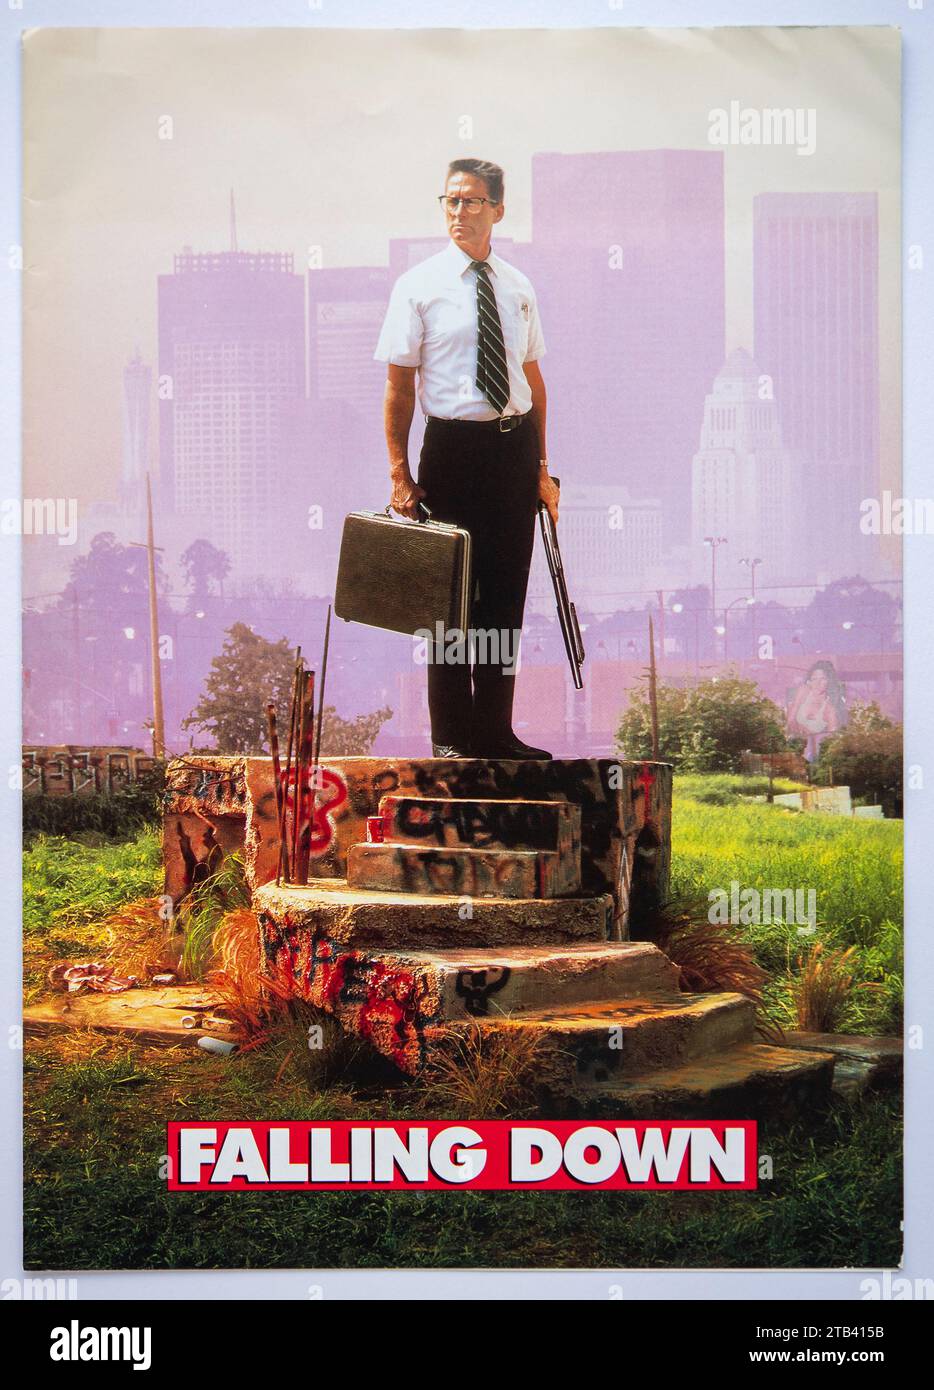 Prima copertina di informazioni pubblicitarie per il film Falling Down, un thriller psicologico con Michael Douglas, uscito nel 1993 Foto Stock